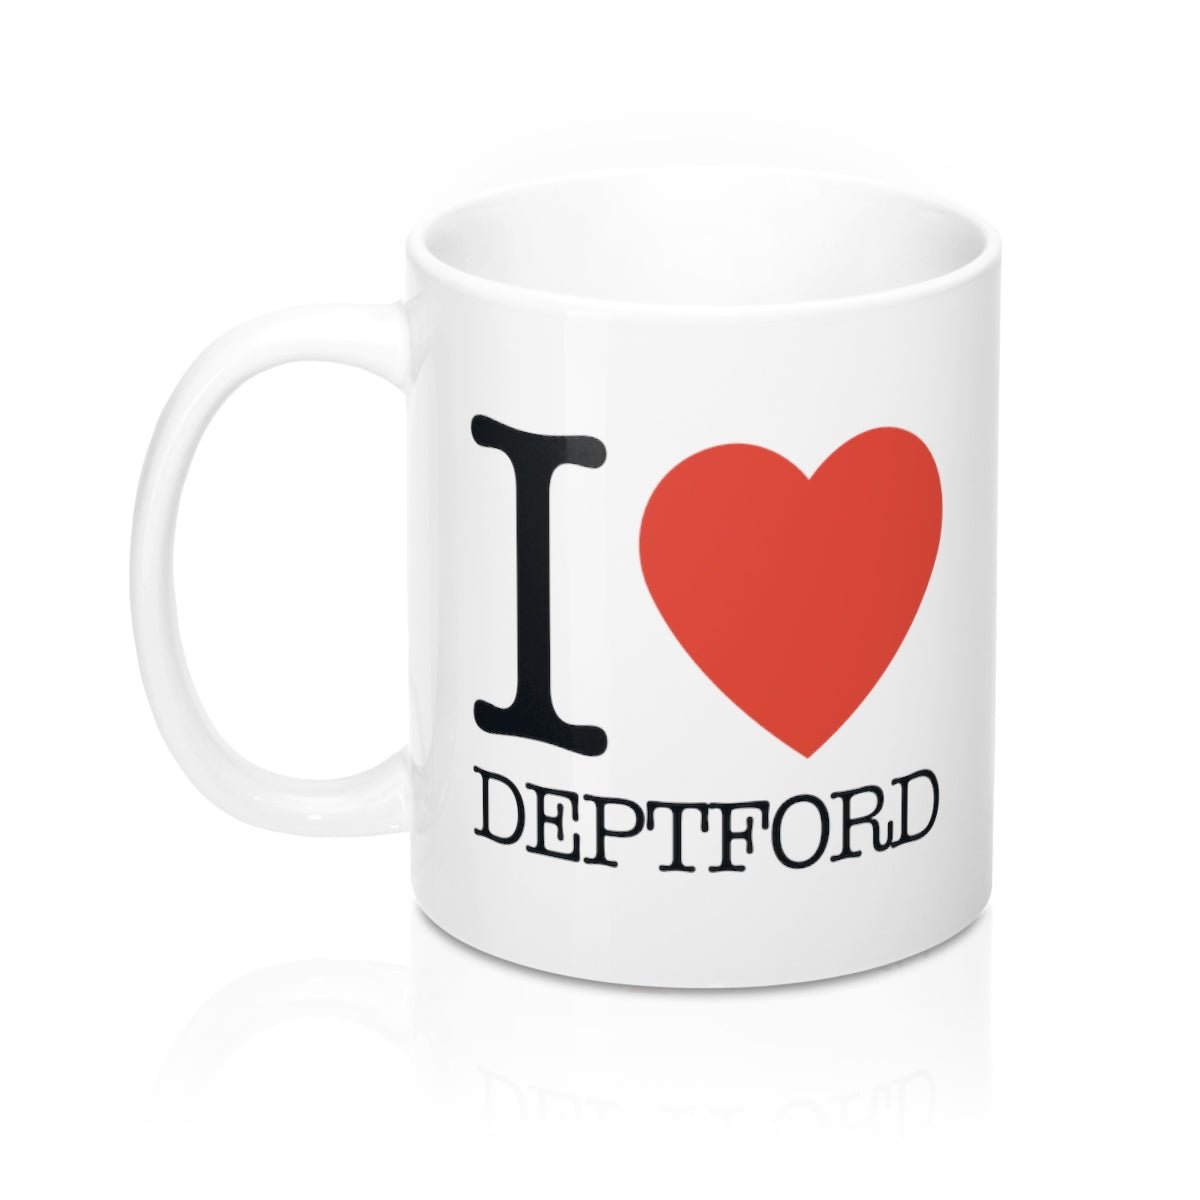 I Heart Deptford Mug